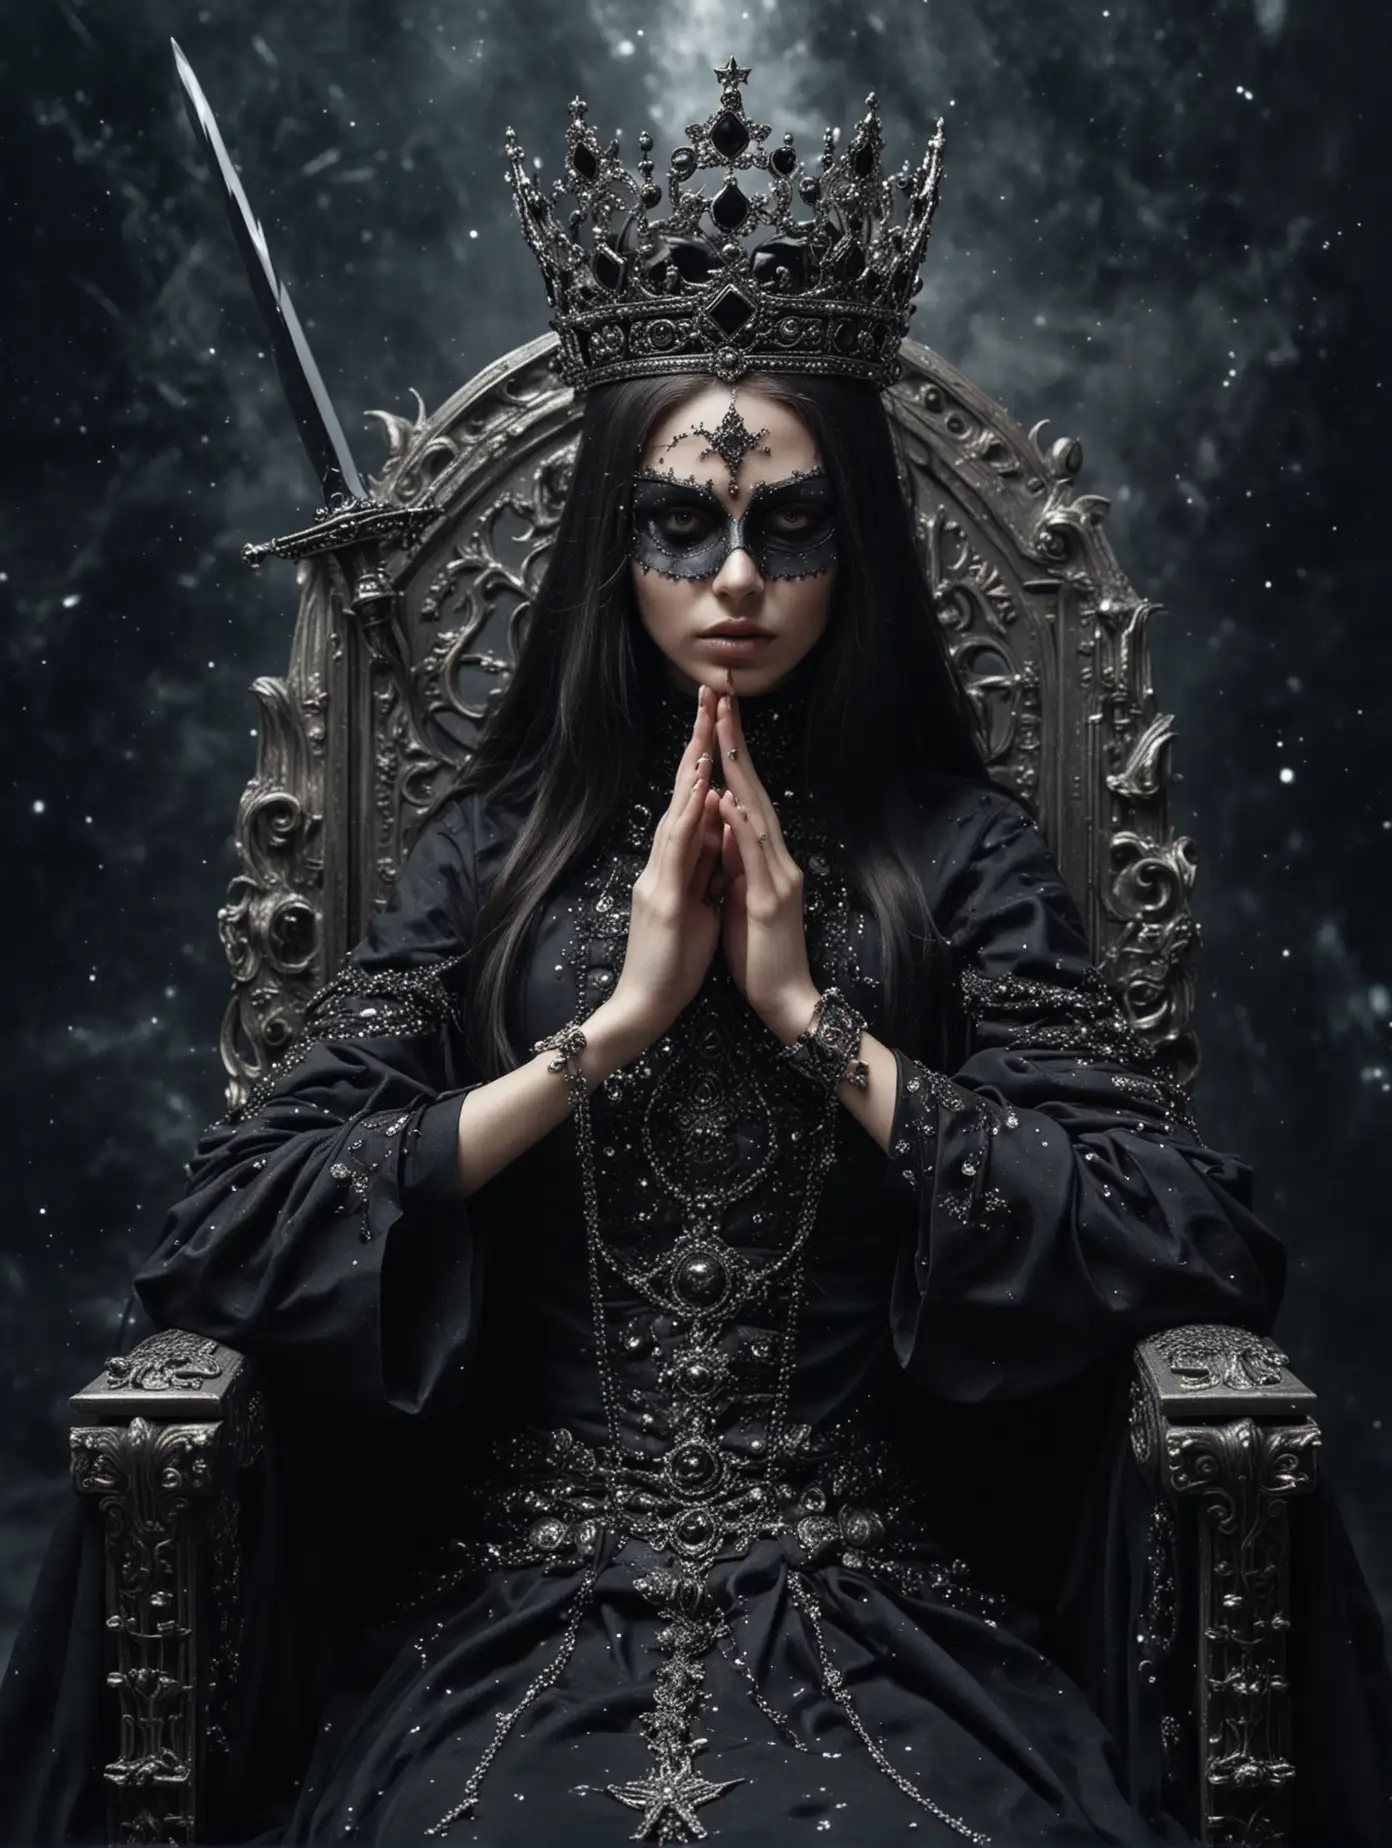 Космос. Звезды. Красивая Сестра Гессерит сидит на троне на краю черной дыры. На глазах черная маска закрывает лицо, в руках  черный меч. Корона на голове. Серебряные украшения.